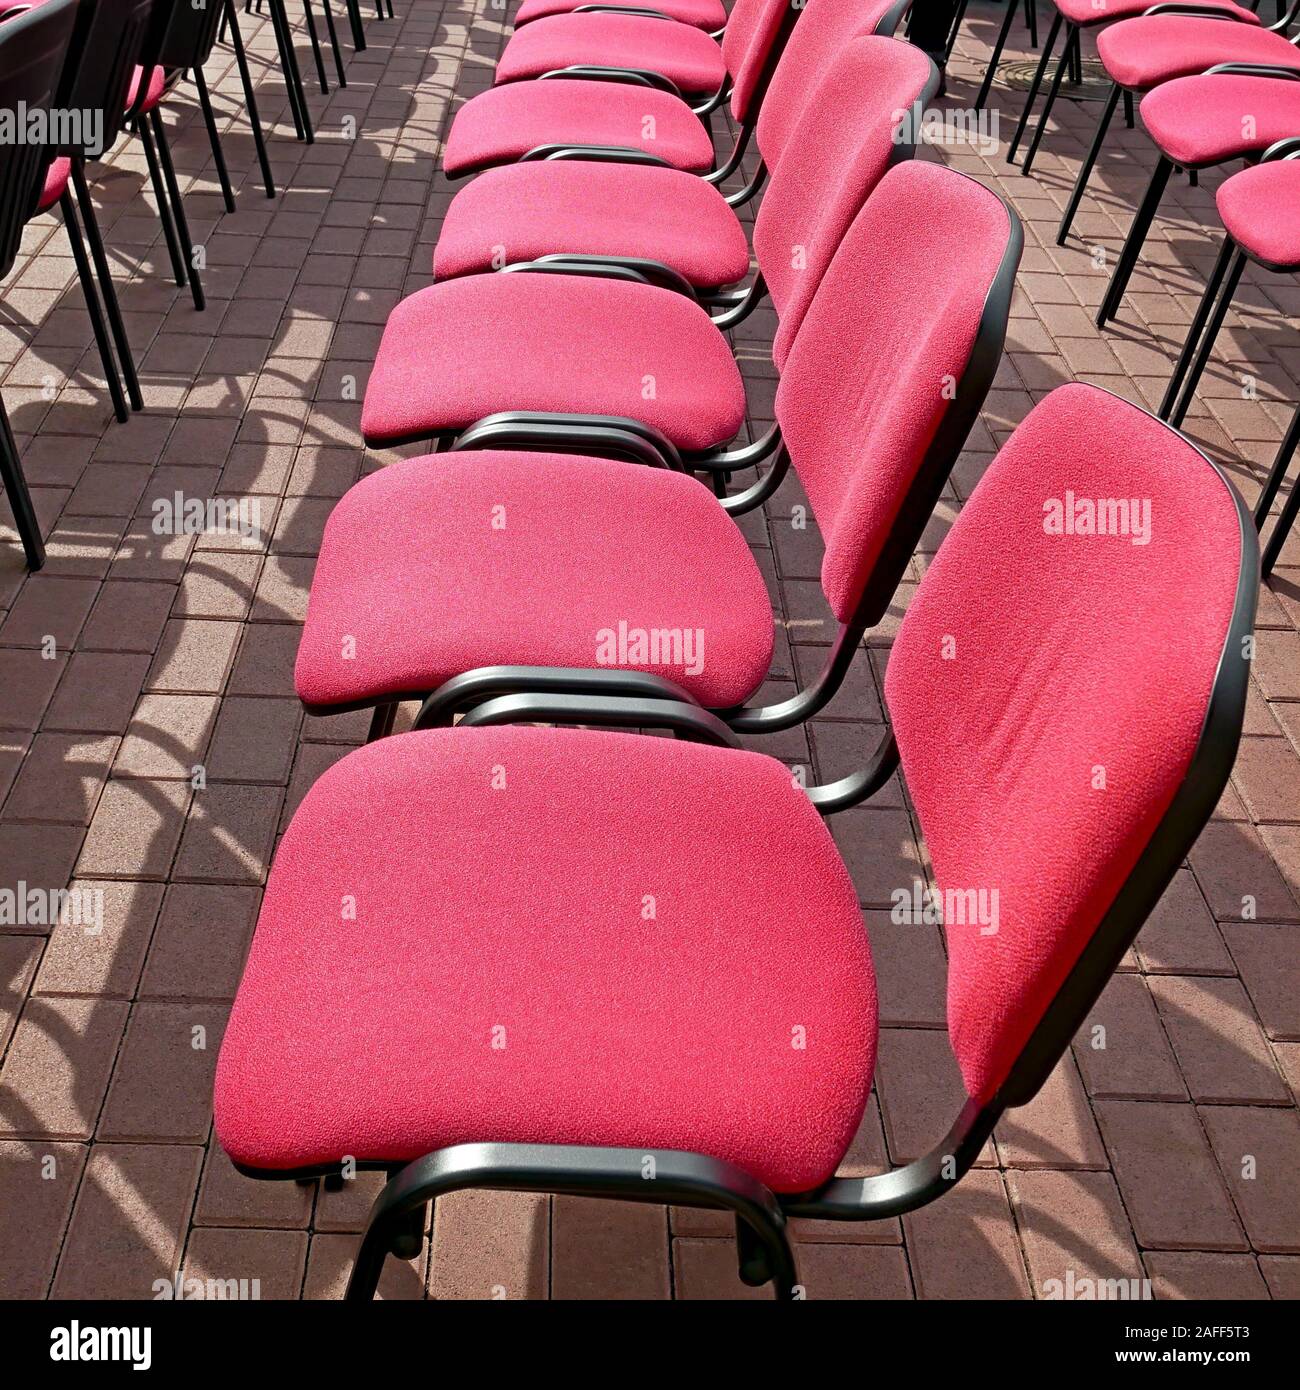 Righe vuote di sedie da ufficio con soluzione satura di colore rosso cremisi dei sedili si trovano sul marciapiede all'aperto in estate le giornate di sole durante il festival Foto Stock